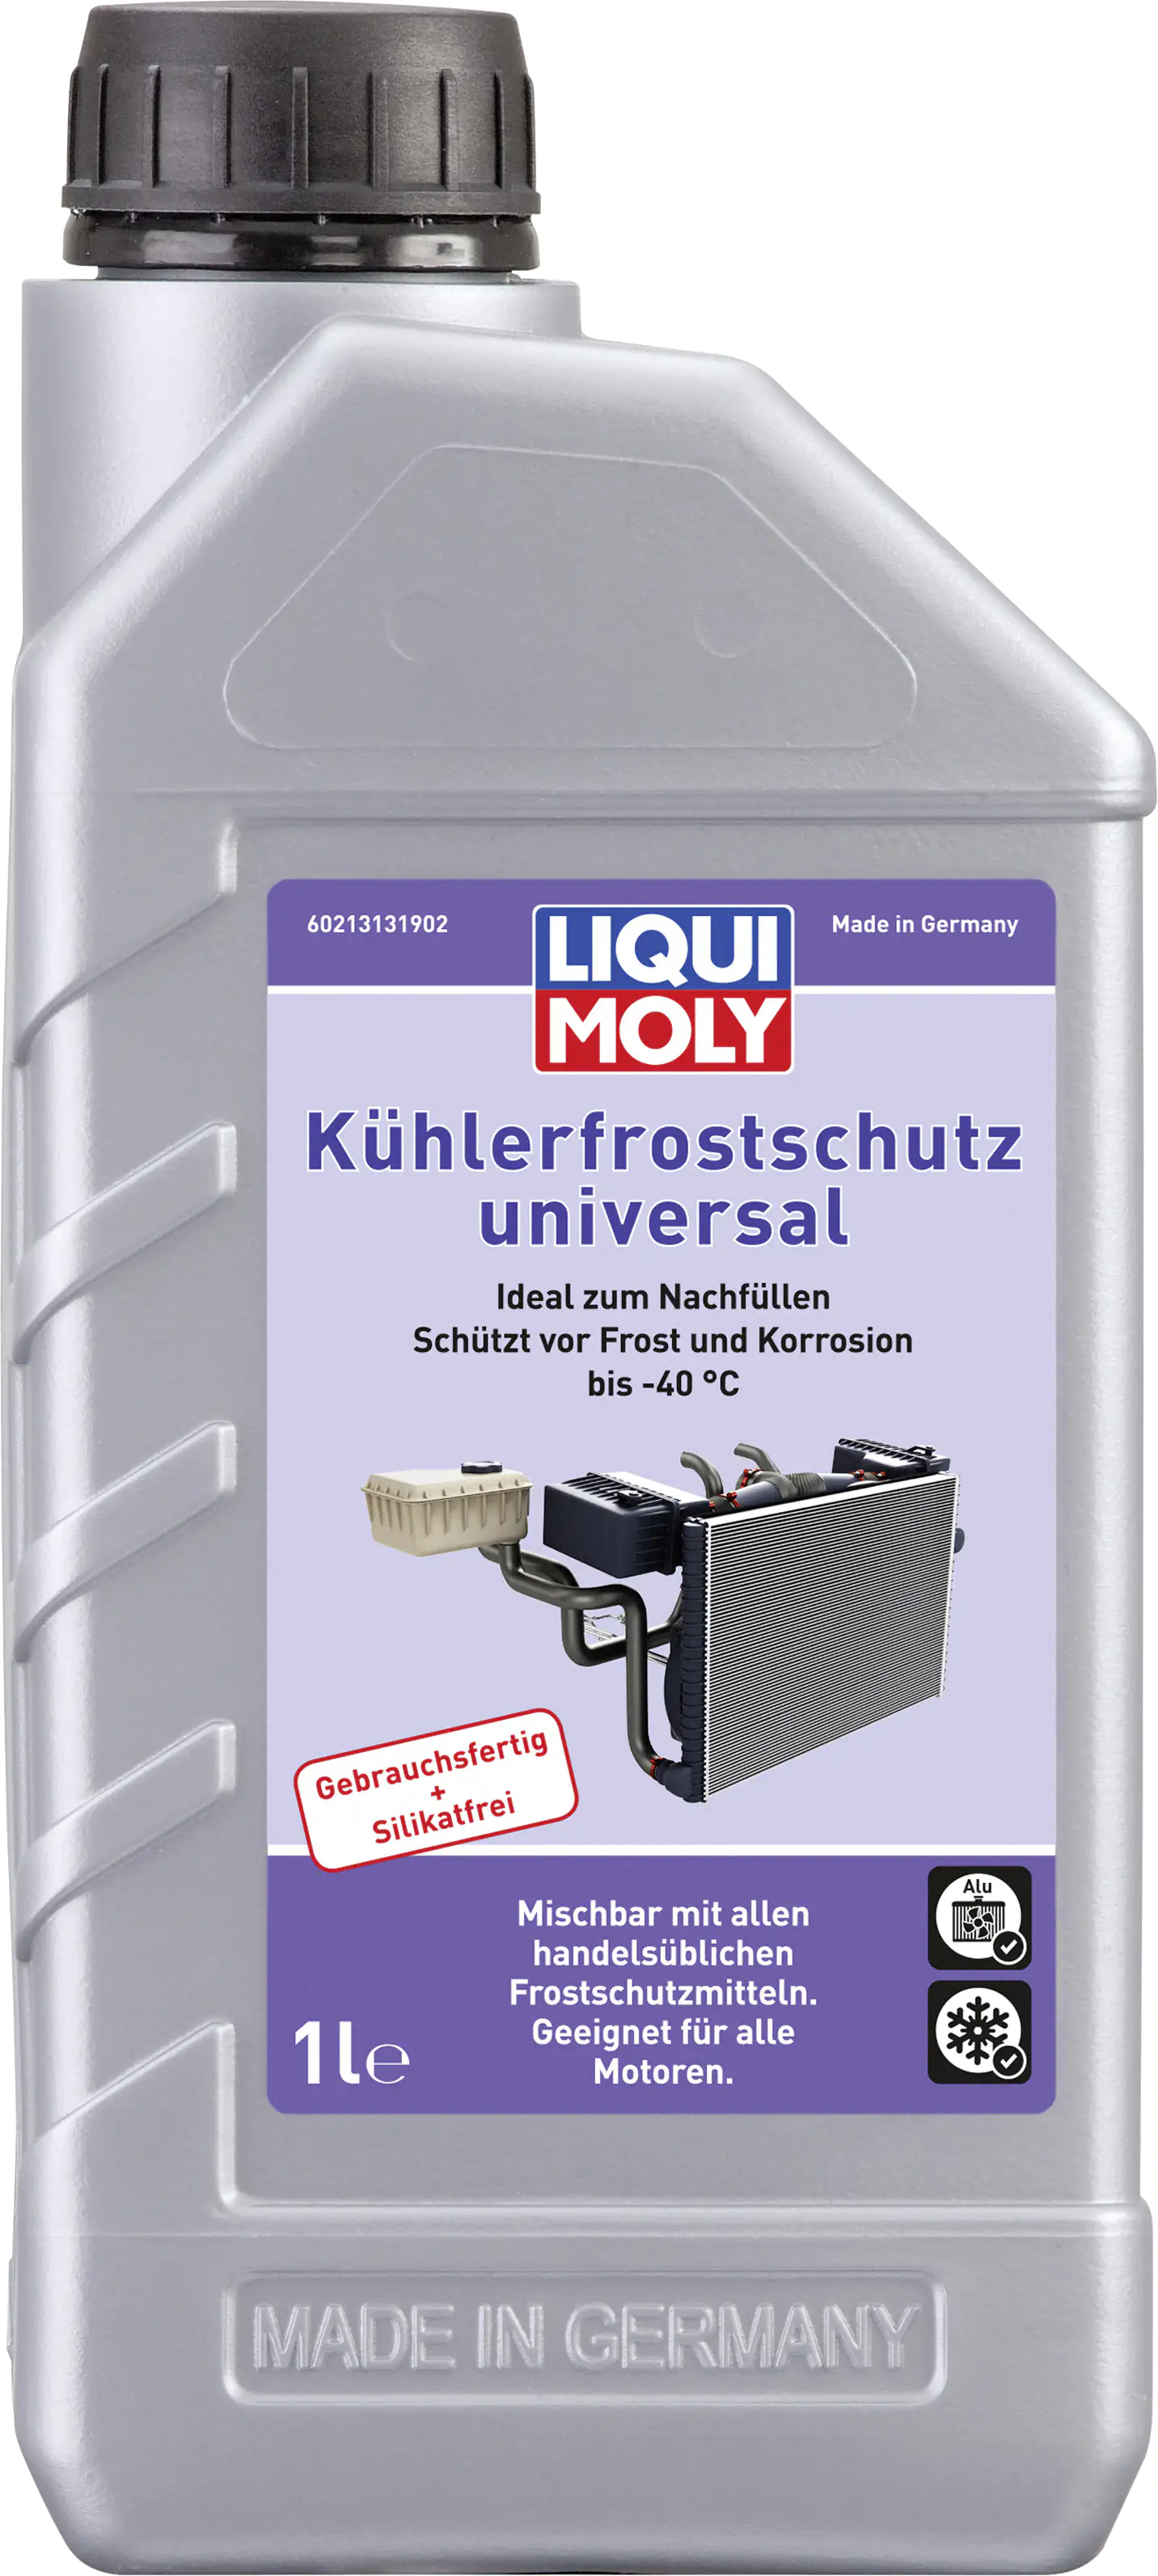 Liqui Moly Kühlerfrostschutz KFS 12 Evo 5 Liter 5L